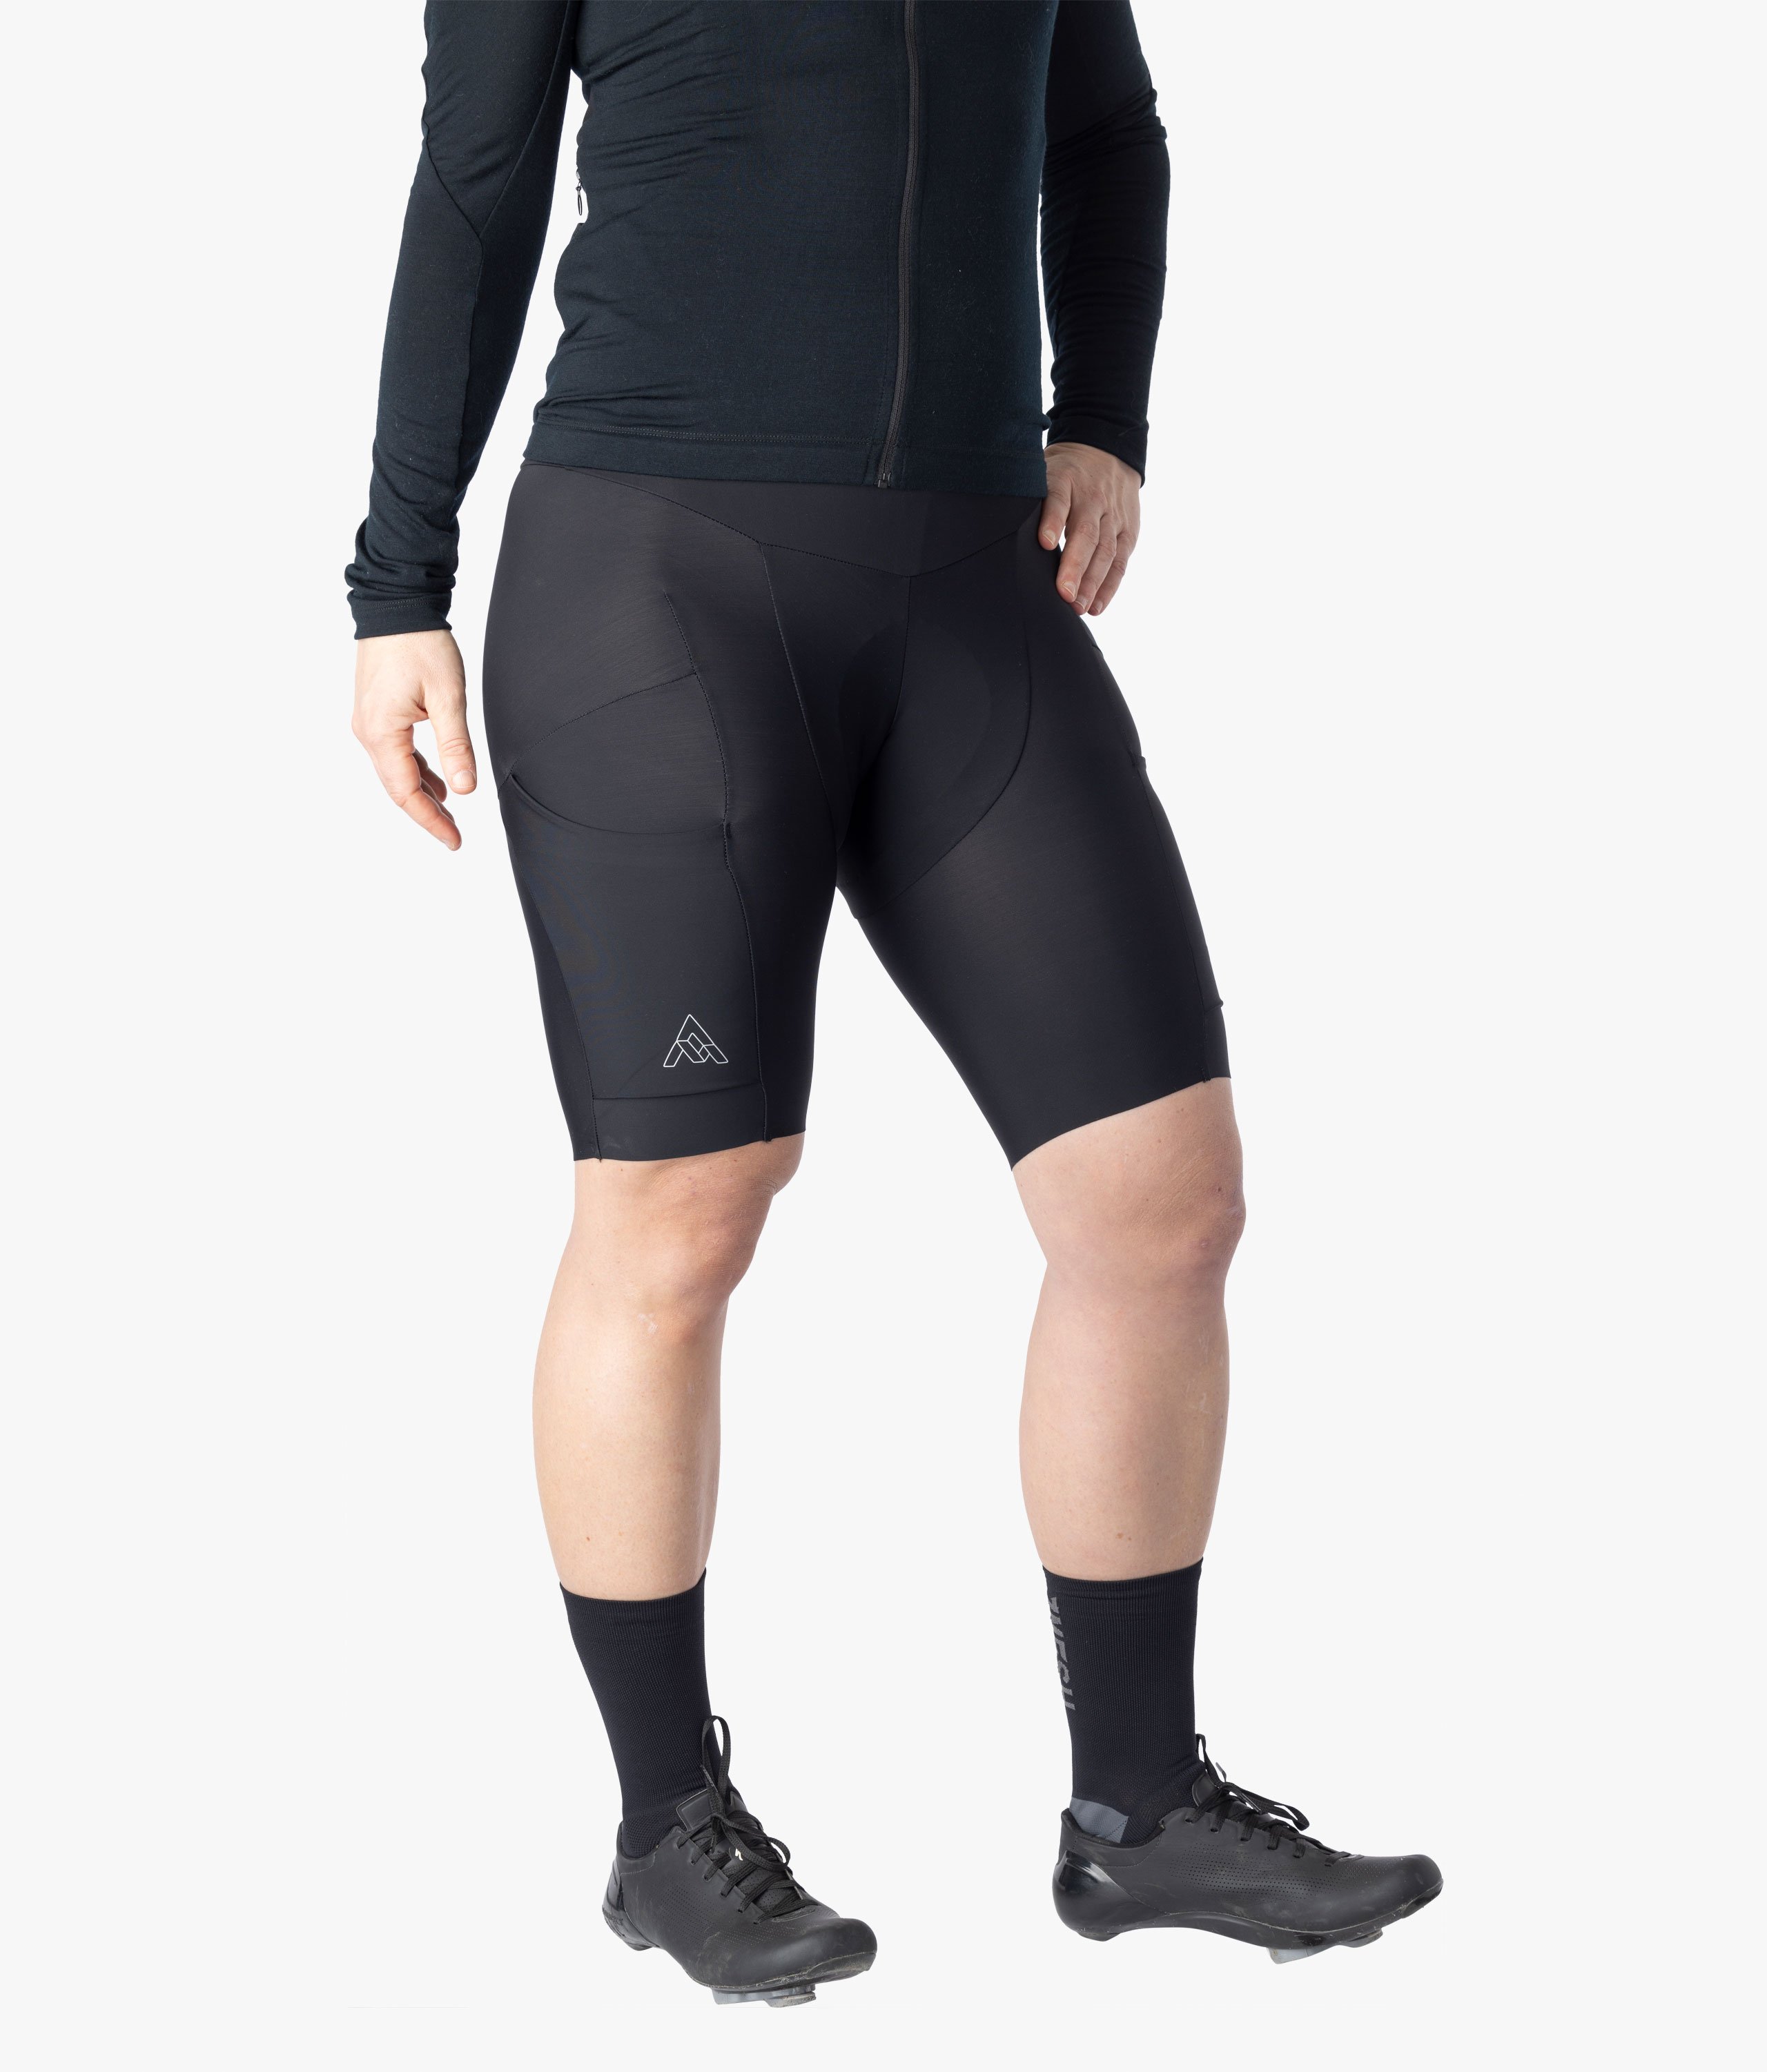 See Ya Sausage Legs Cycling Bib Shorts – Muze Women